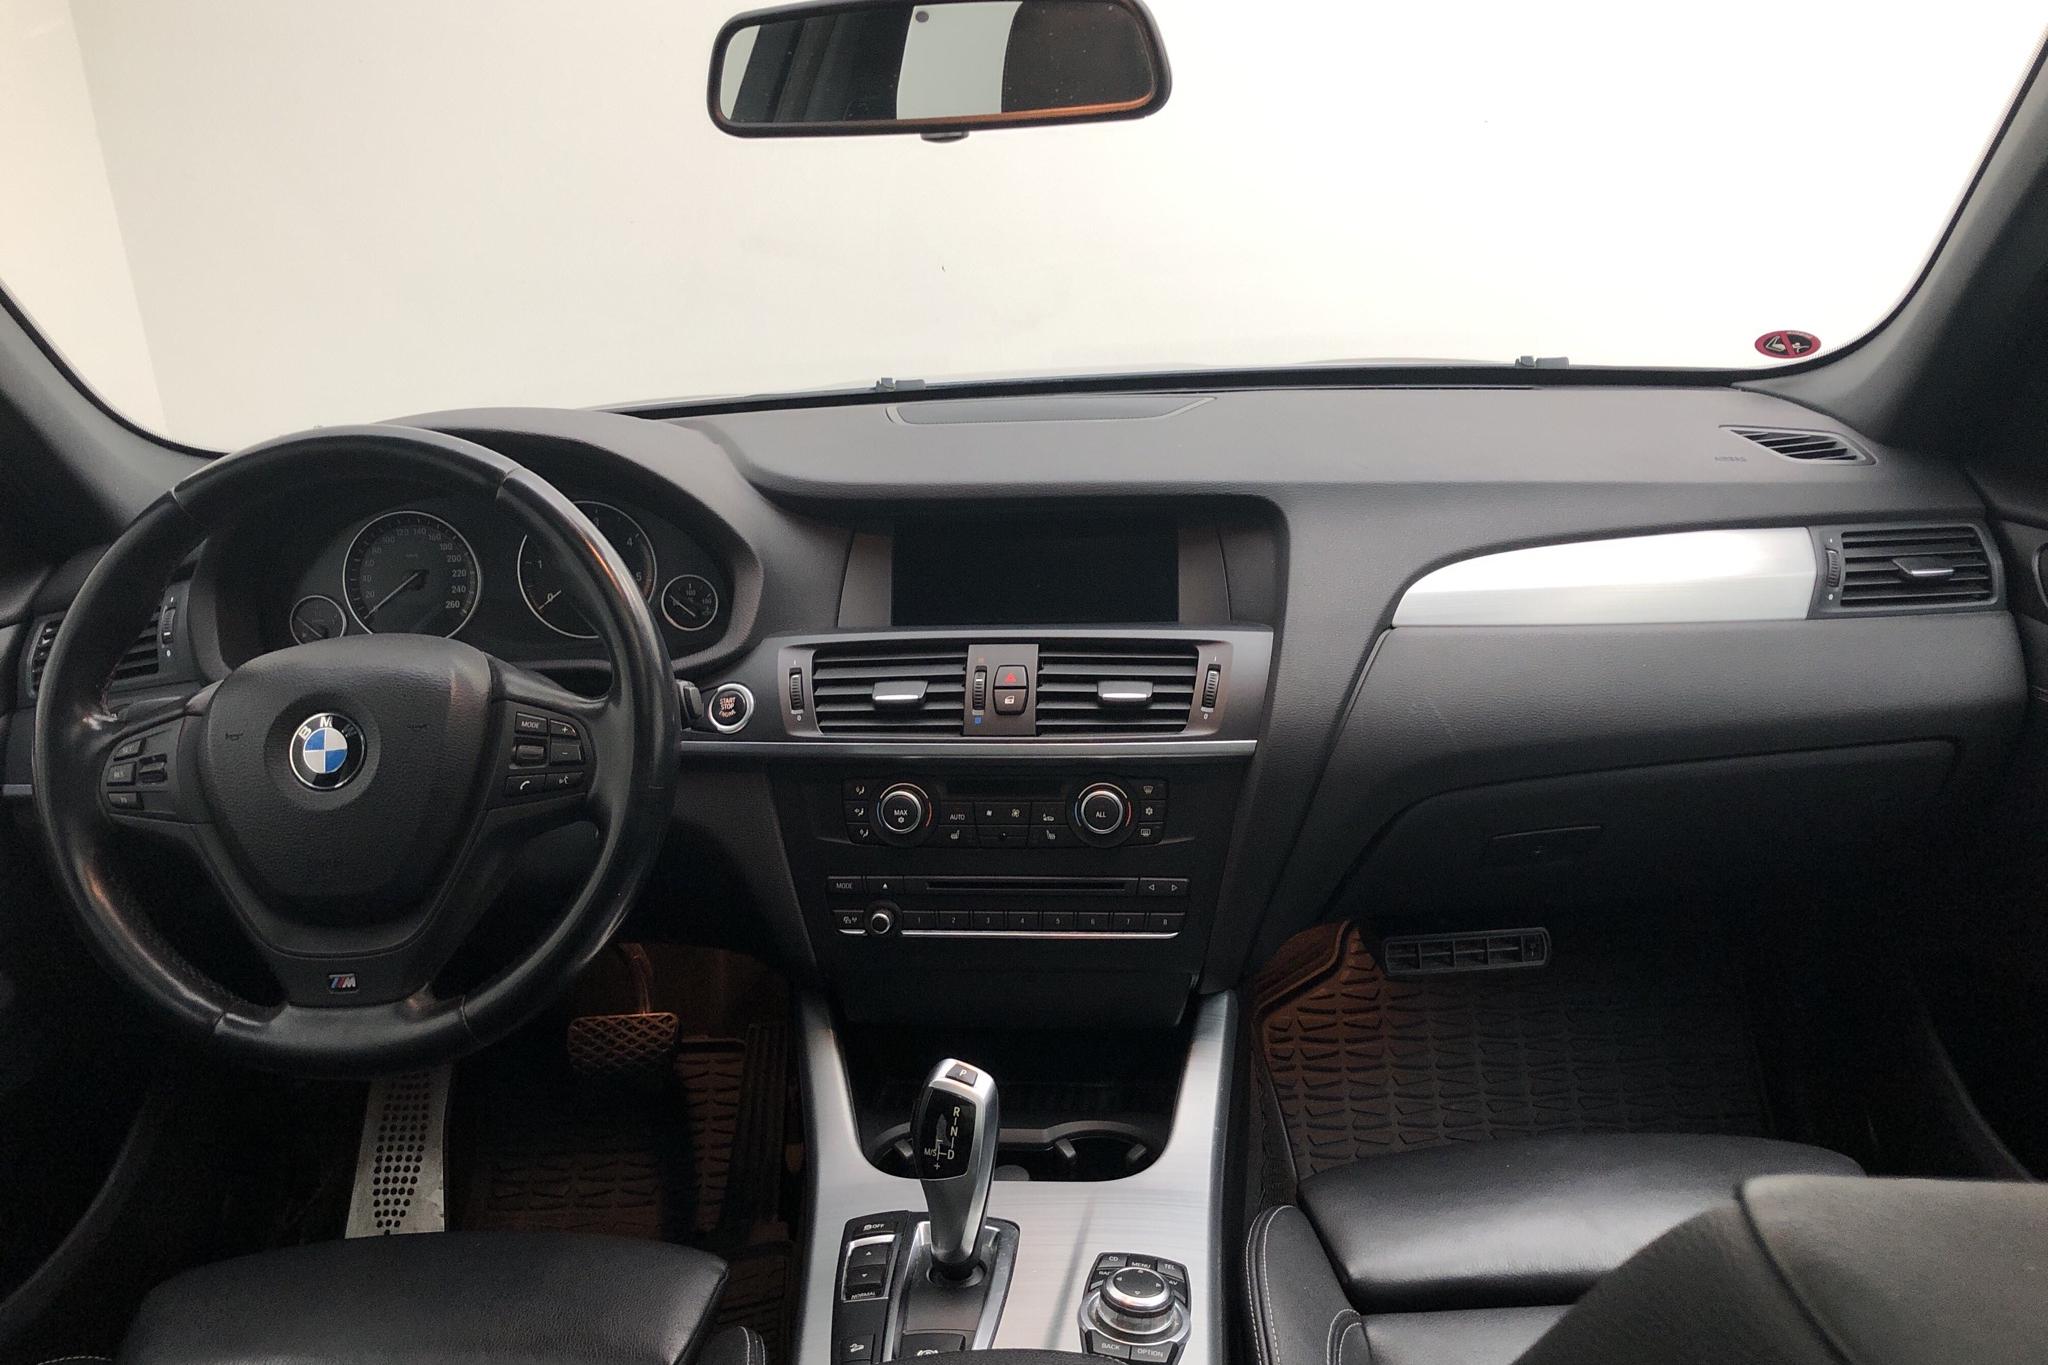 BMW X3 xDrive30d, F25 (258hk) - 202 650 km - Automatic - black - 2012